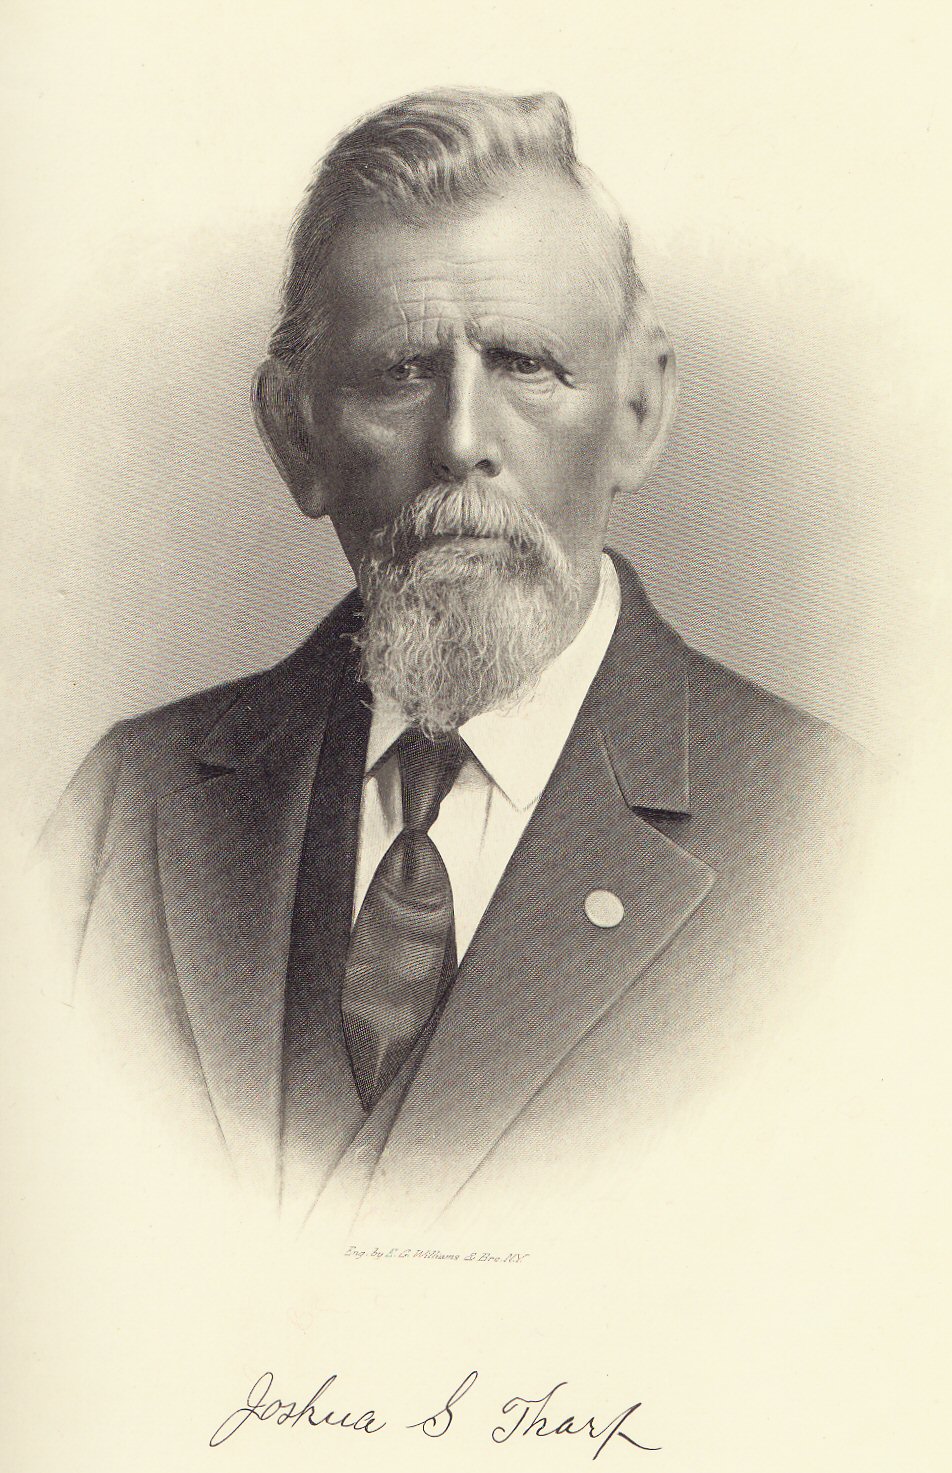 Joshua S. Tharp